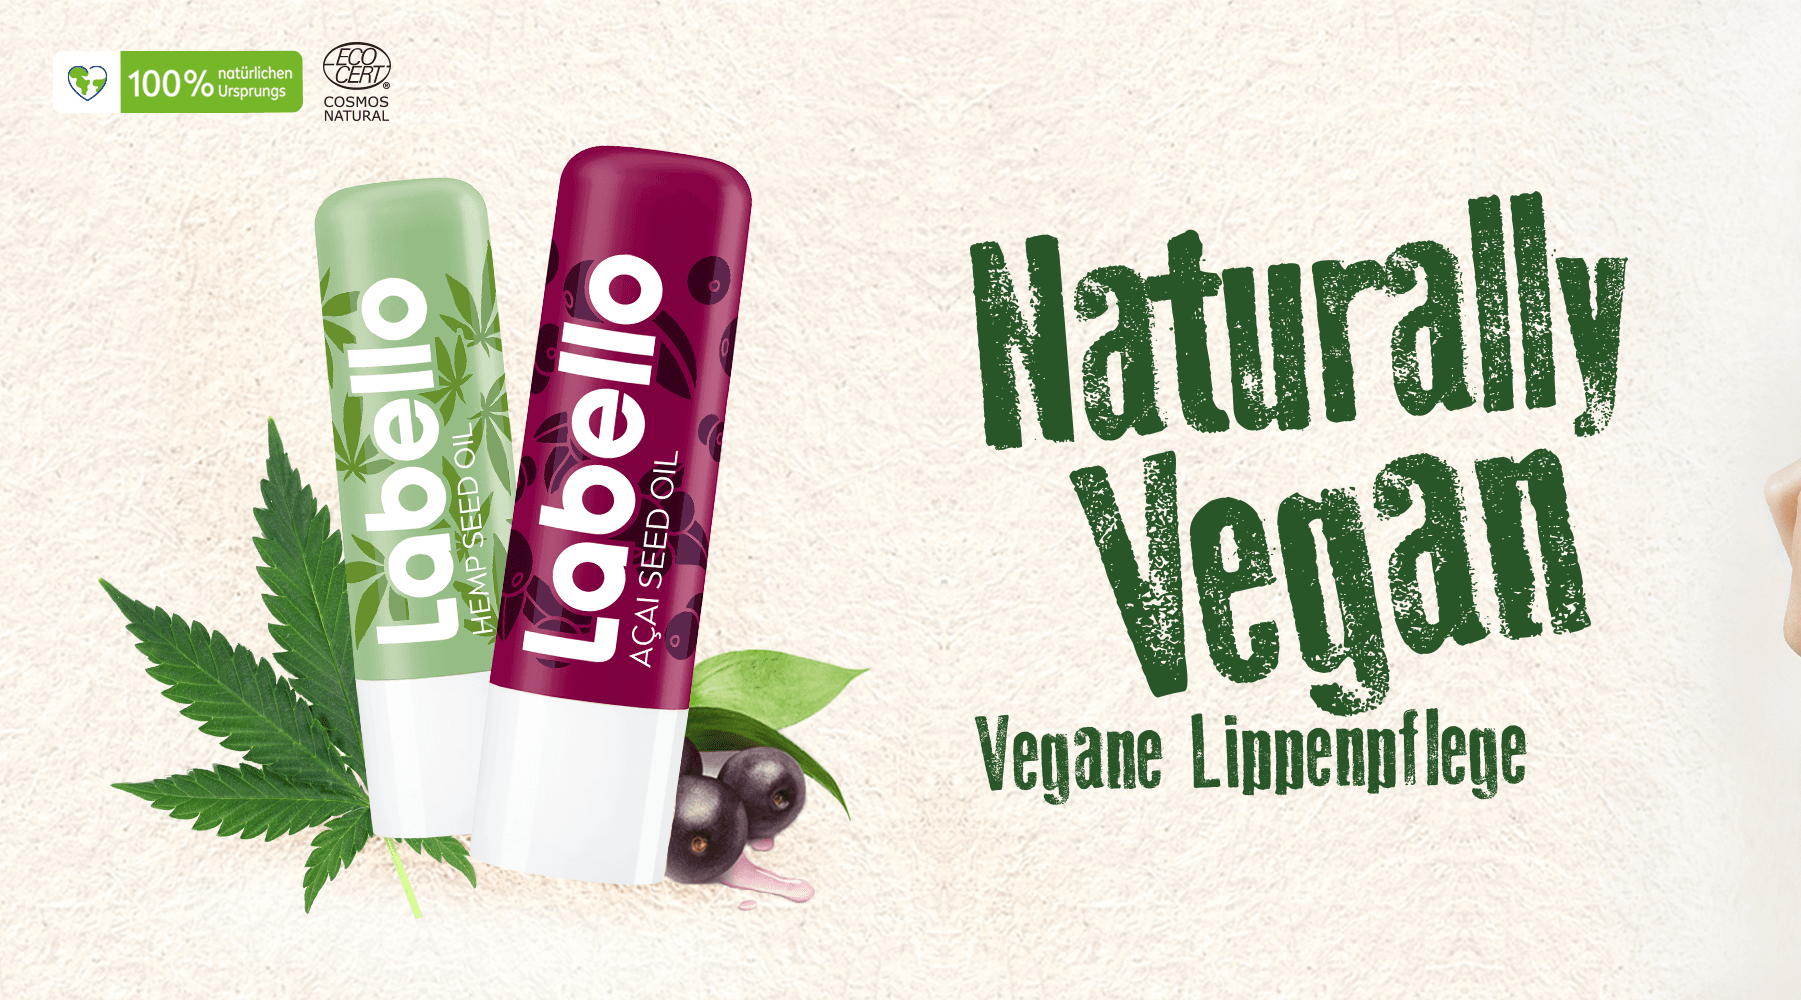 Labello naturally vegan Lippenpflege